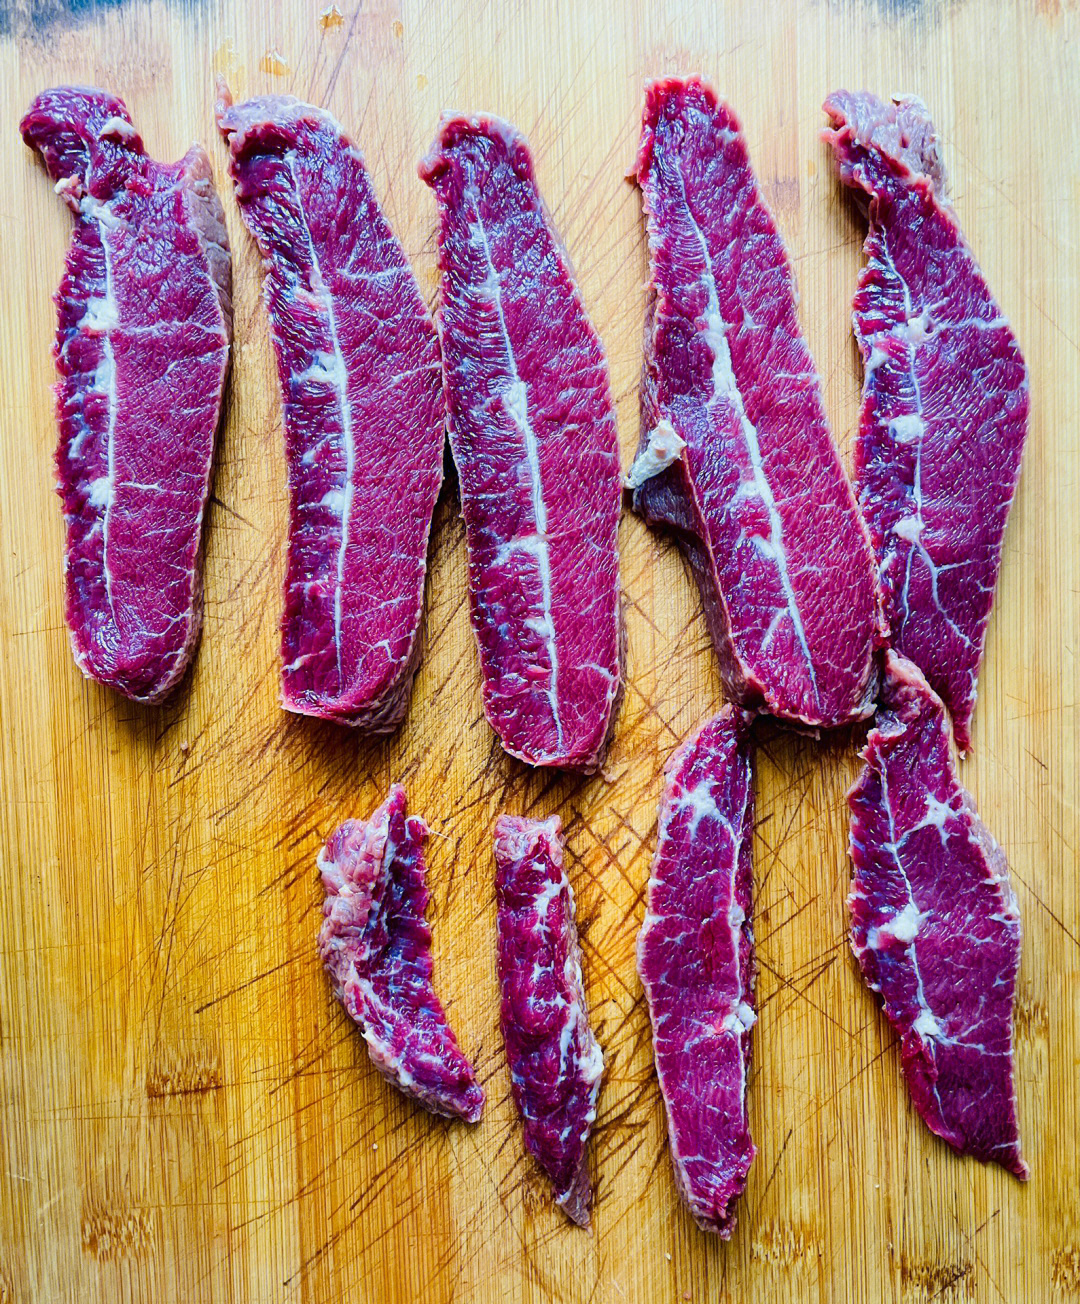 家庭版牛肉干的做法:15准备一斤牛肉,冷水泡半个小时,切成条,加3勺